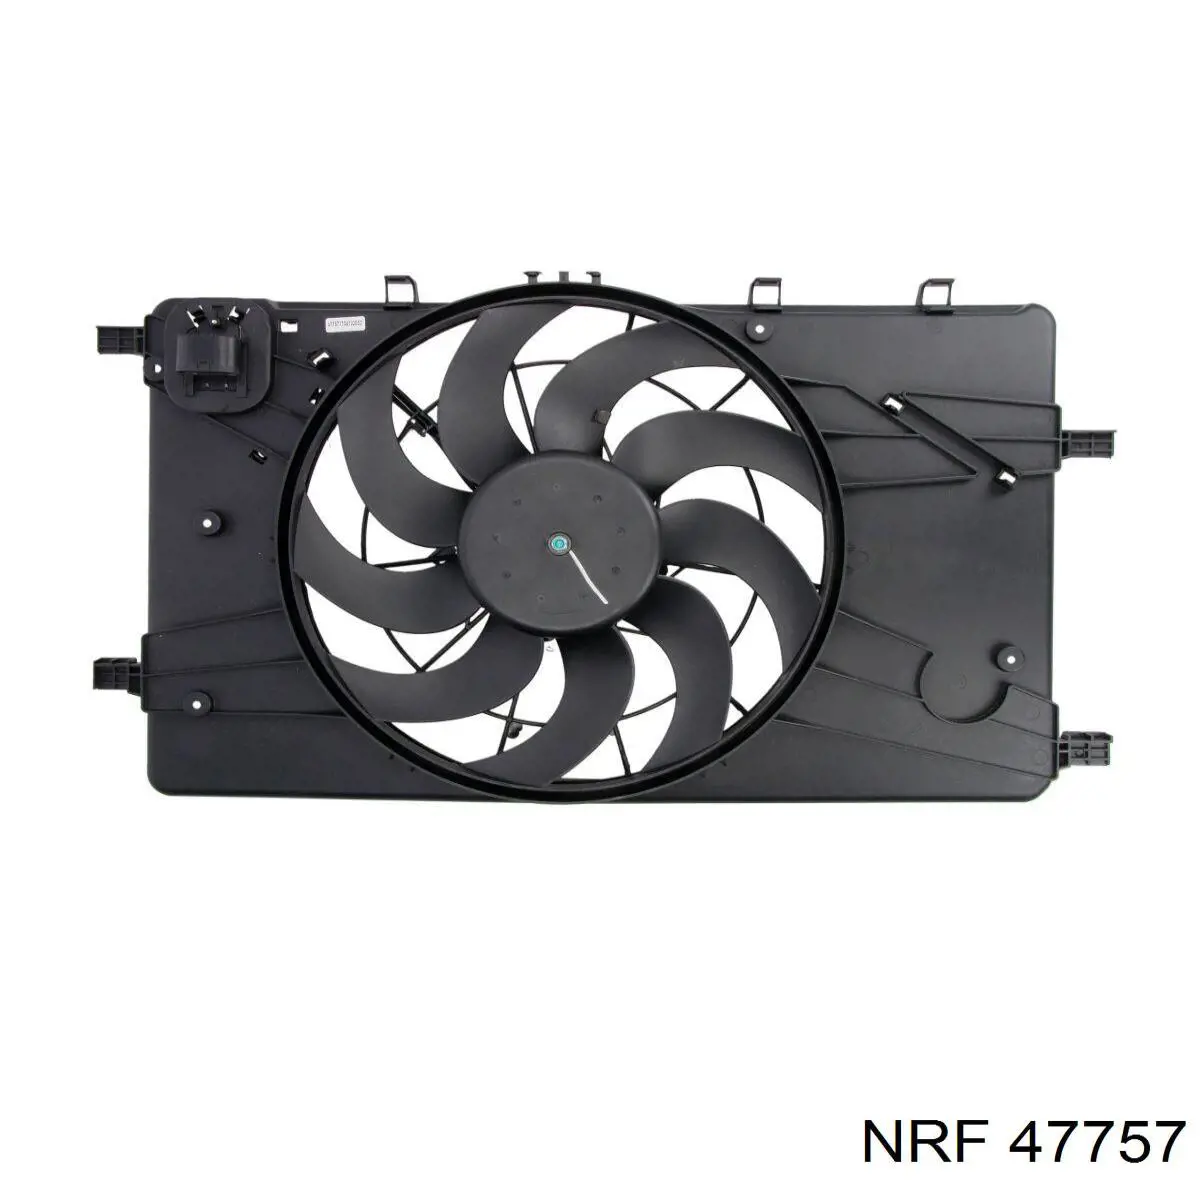 47757 NRF difusor de radiador, ventilador de refrigeración, condensador del aire acondicionado, completo con motor y rodete